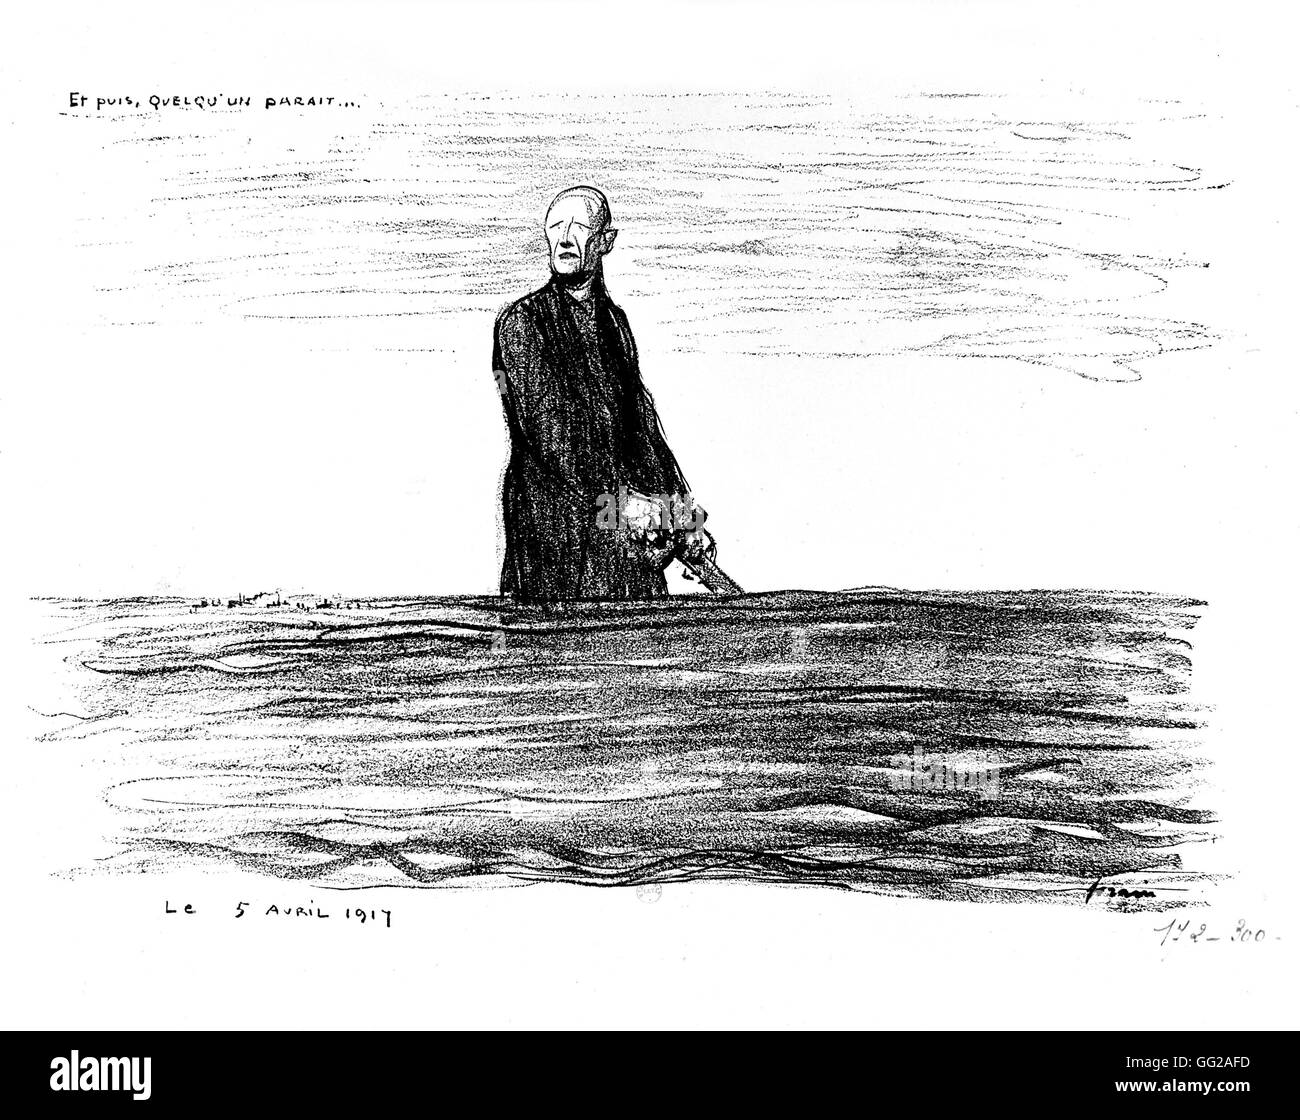 Karikatur von Jean-Louis Forains (1852-1931). "Und dann erscheint jemand..." 5. April 1917 Frankreich - Weltkrieg Paris. Nationalbibliothek Stockfoto